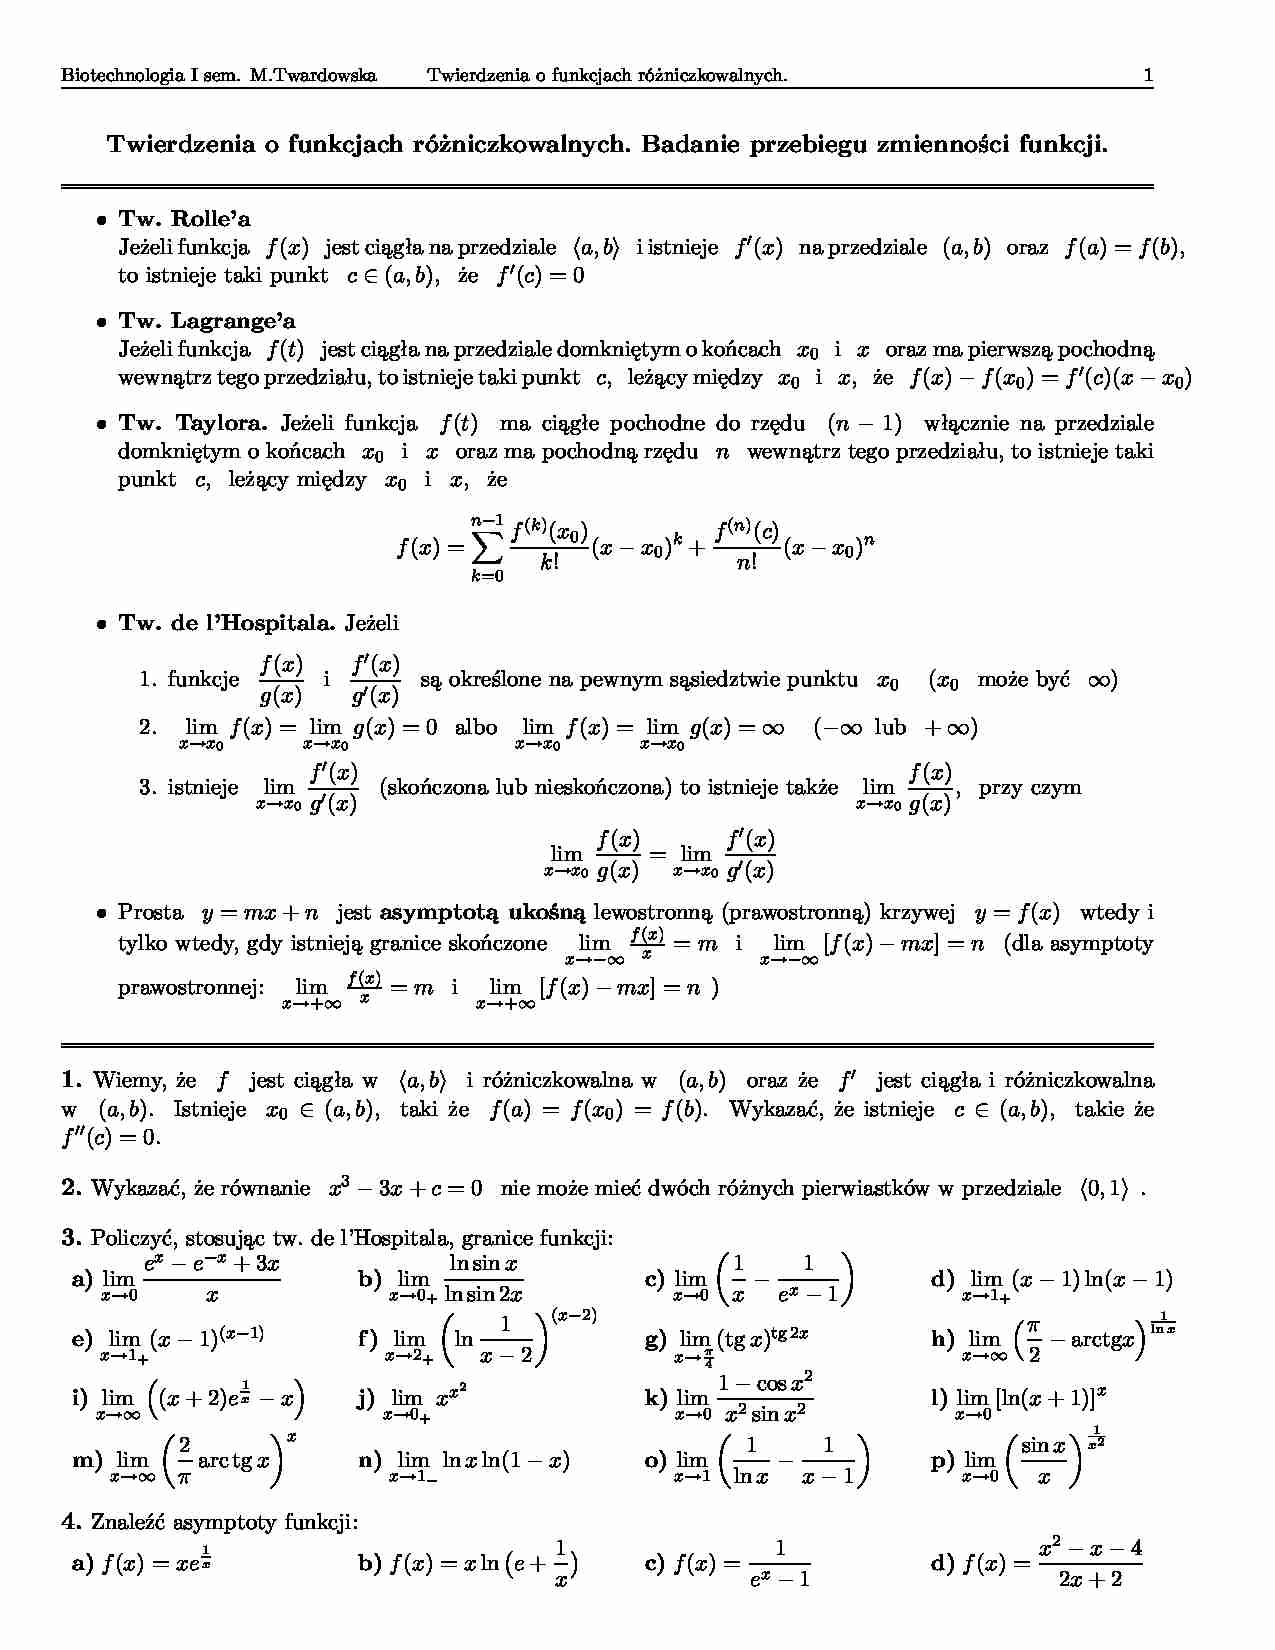 Twierdzenia o funkcjach różniczkowalnych-opracowanie - strona 1